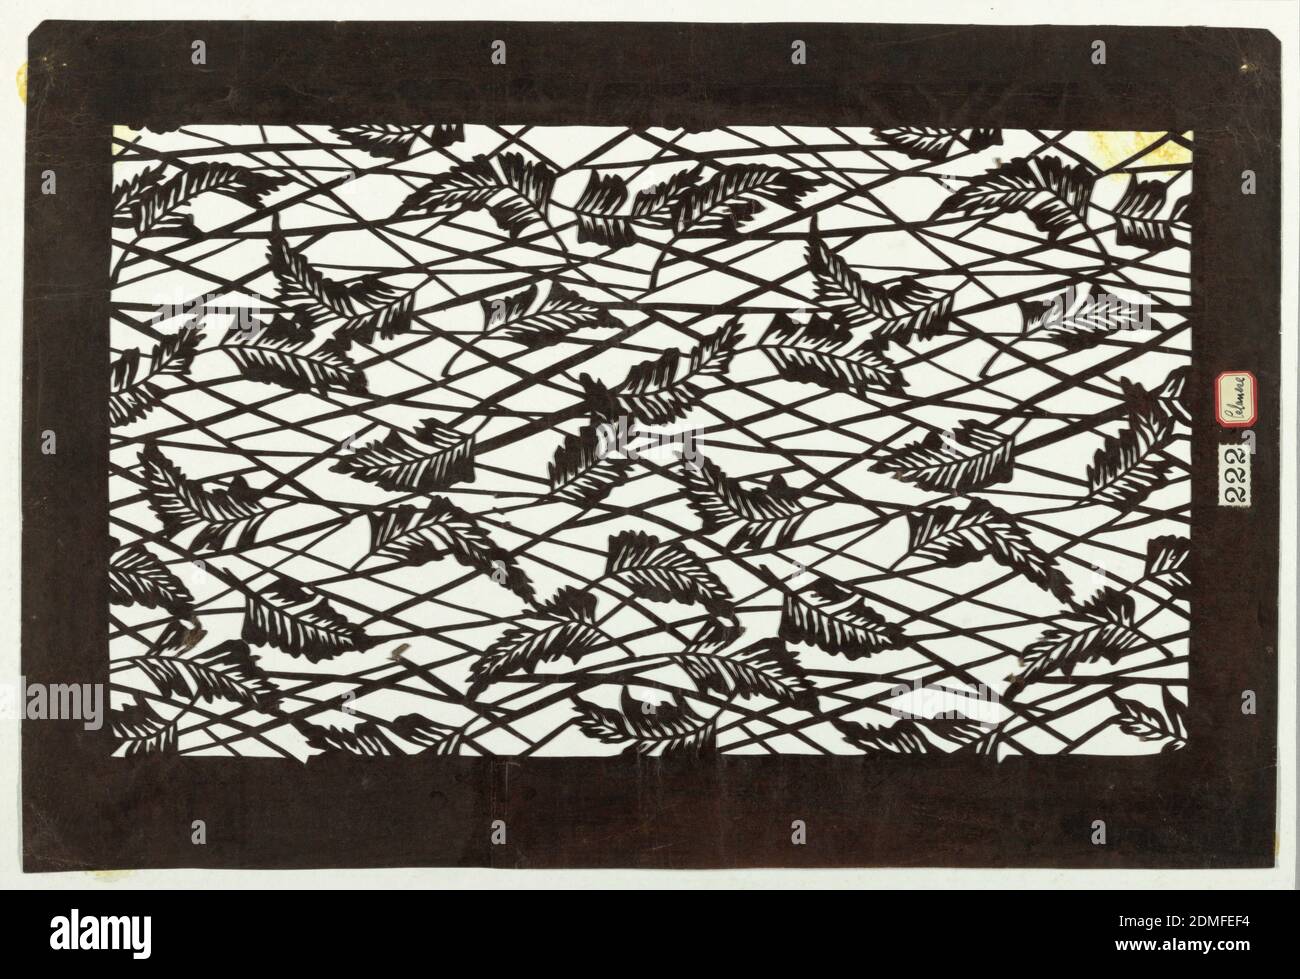 Plumas, papel de mora (kozo washi) tratado con tanino persimmon fermentado (kakishibu), plumas estilizadas están sobre un fondo de tira entrelazada., Japón, mediados del siglo 18 - principios del siglo 19, diseños textiles, Katagami, Katagami Foto de stock